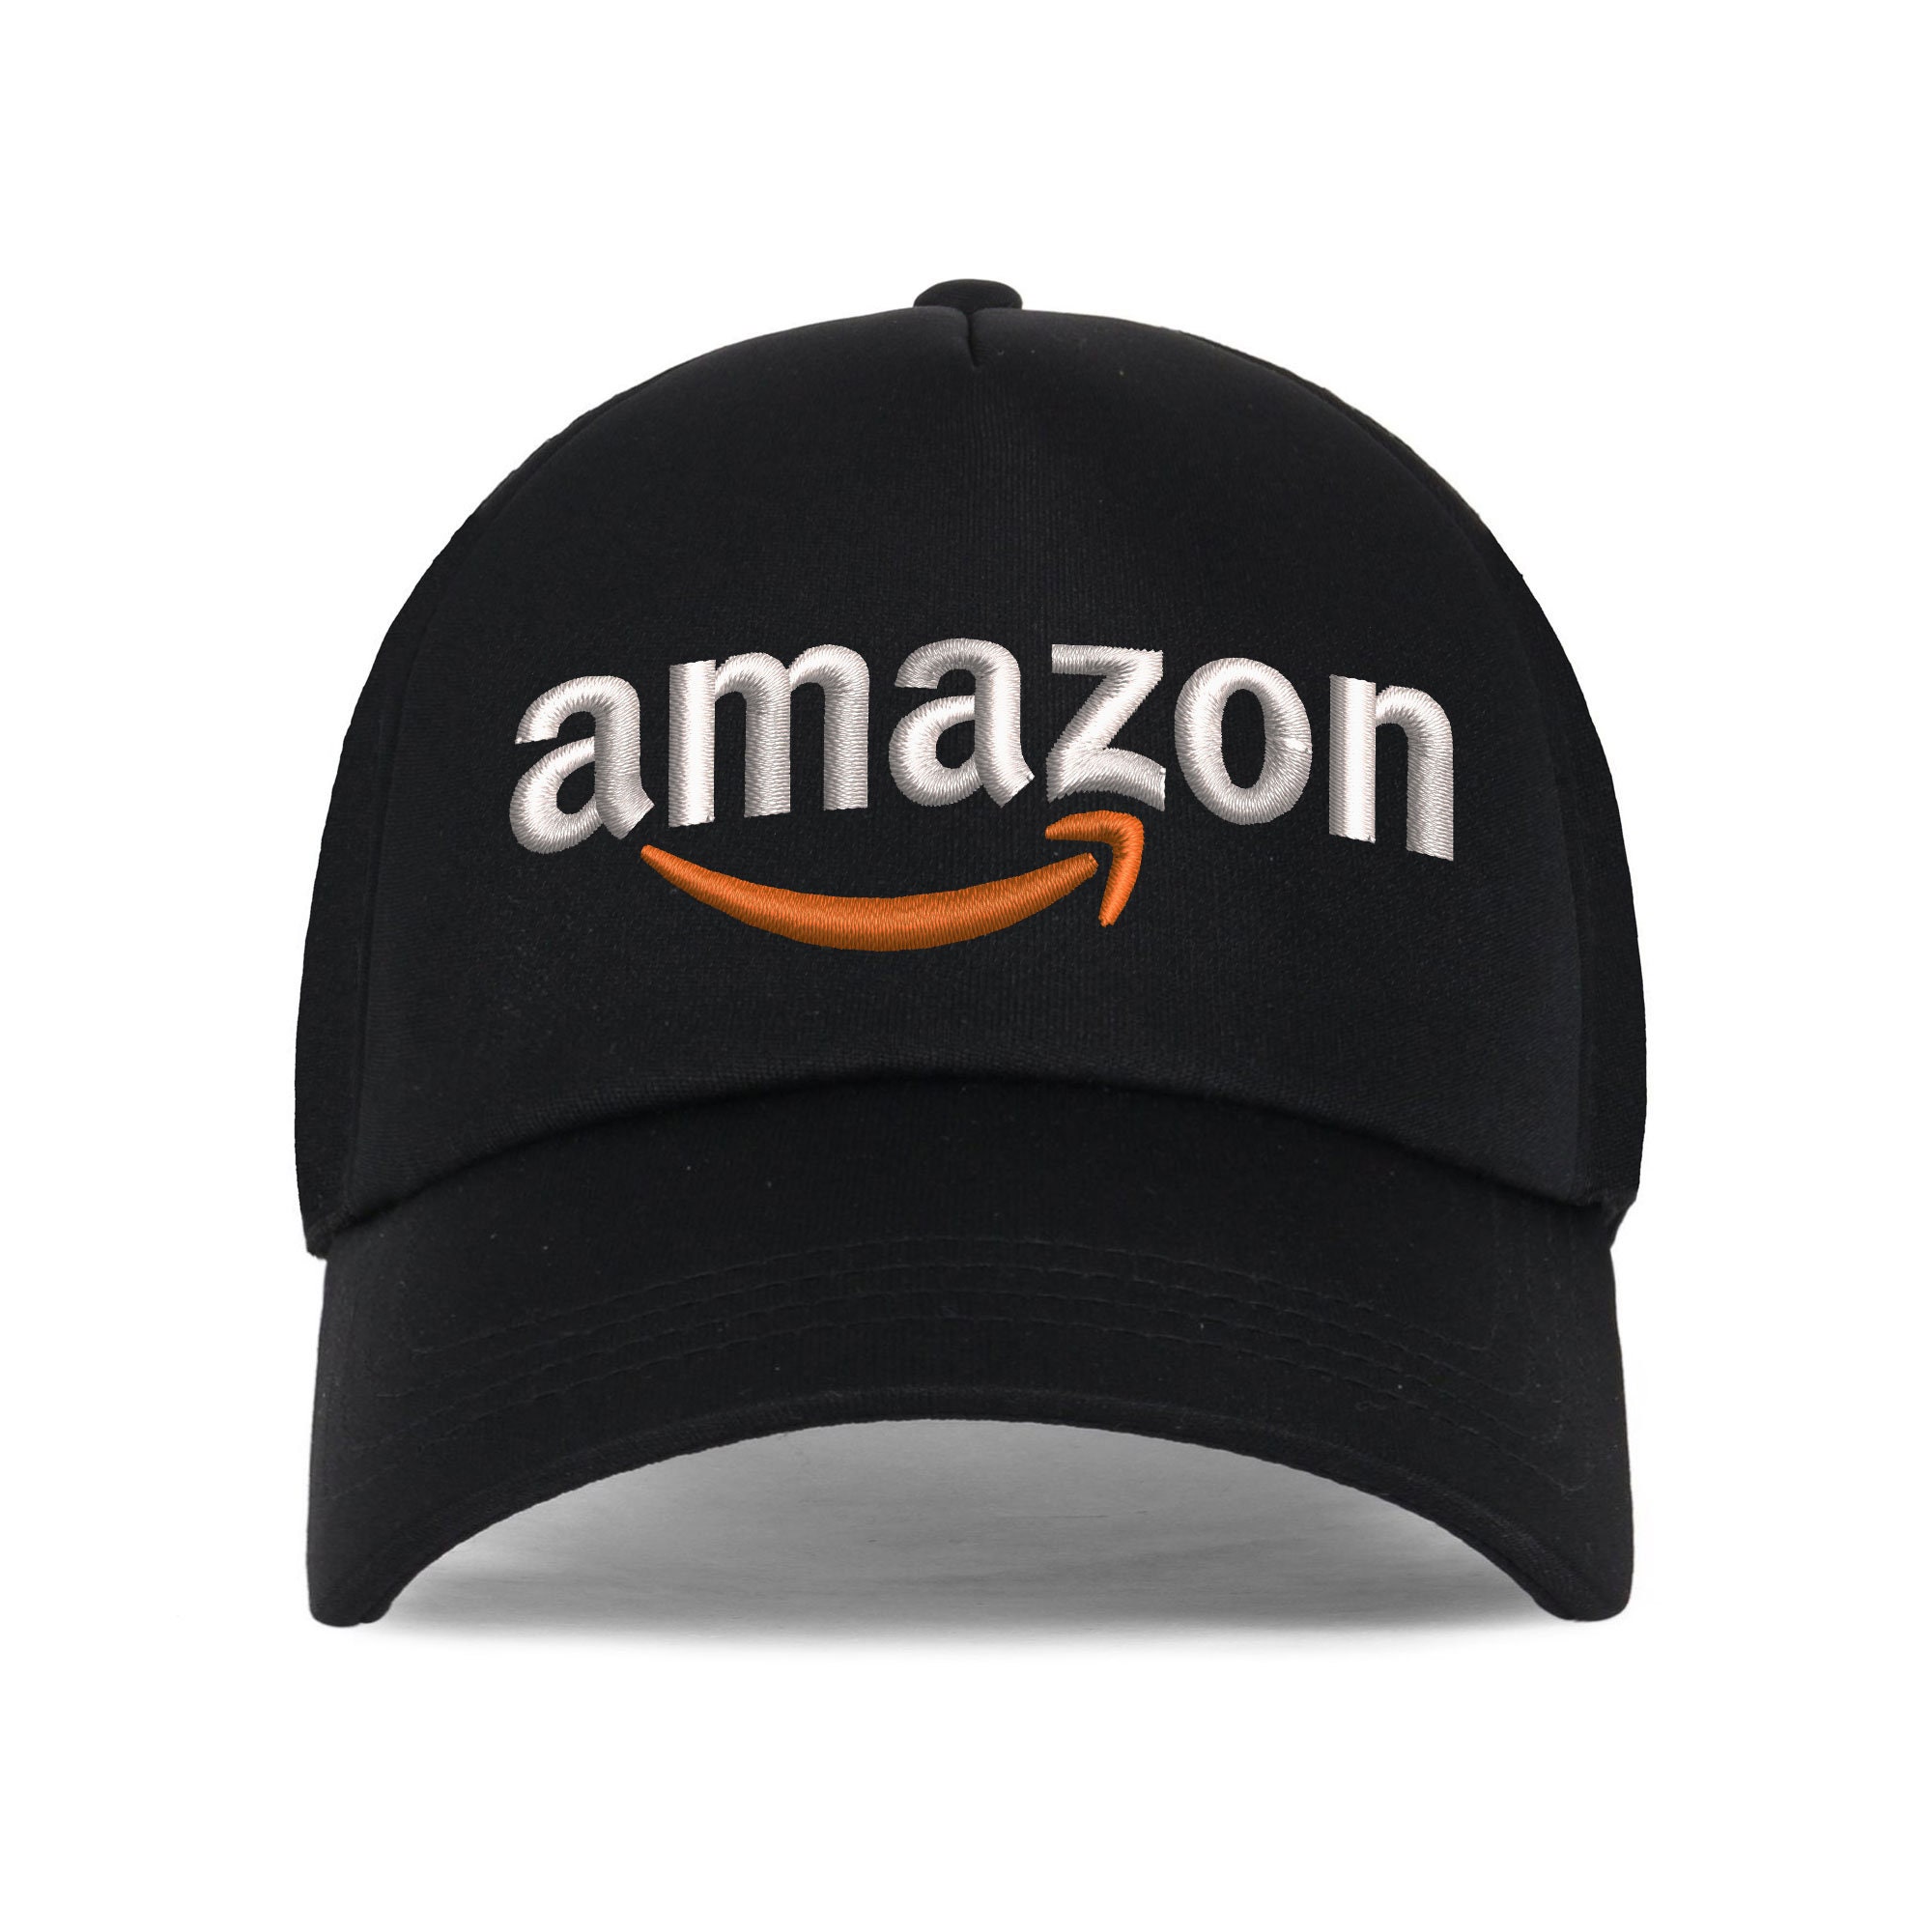 výtok strata dynastie magliette logo Amazon Byť uspokojený zapojení ropa